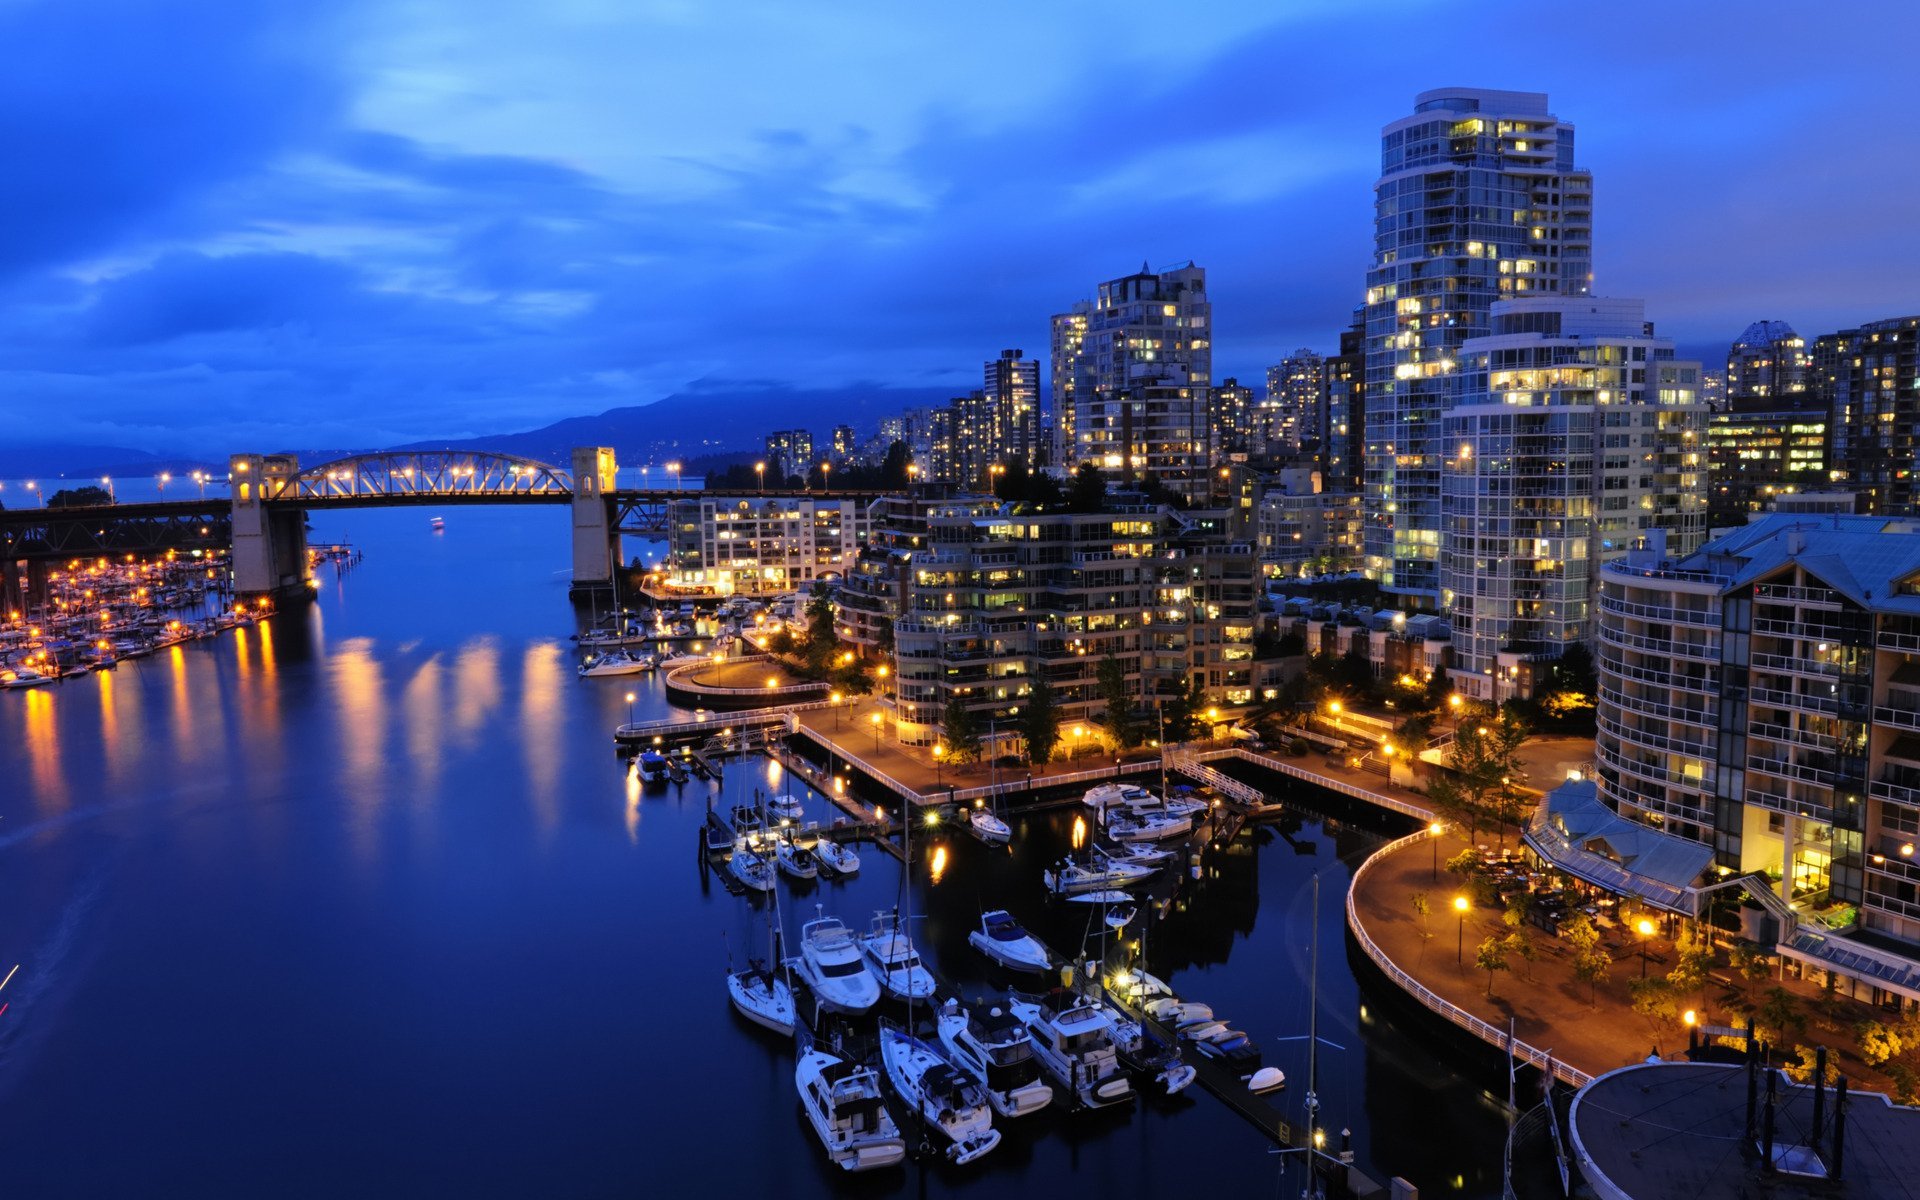 Ванкувер Канада. Ванкувер Канада океан. Ванкувер набережная. Ночной город. Красивые фотки городов